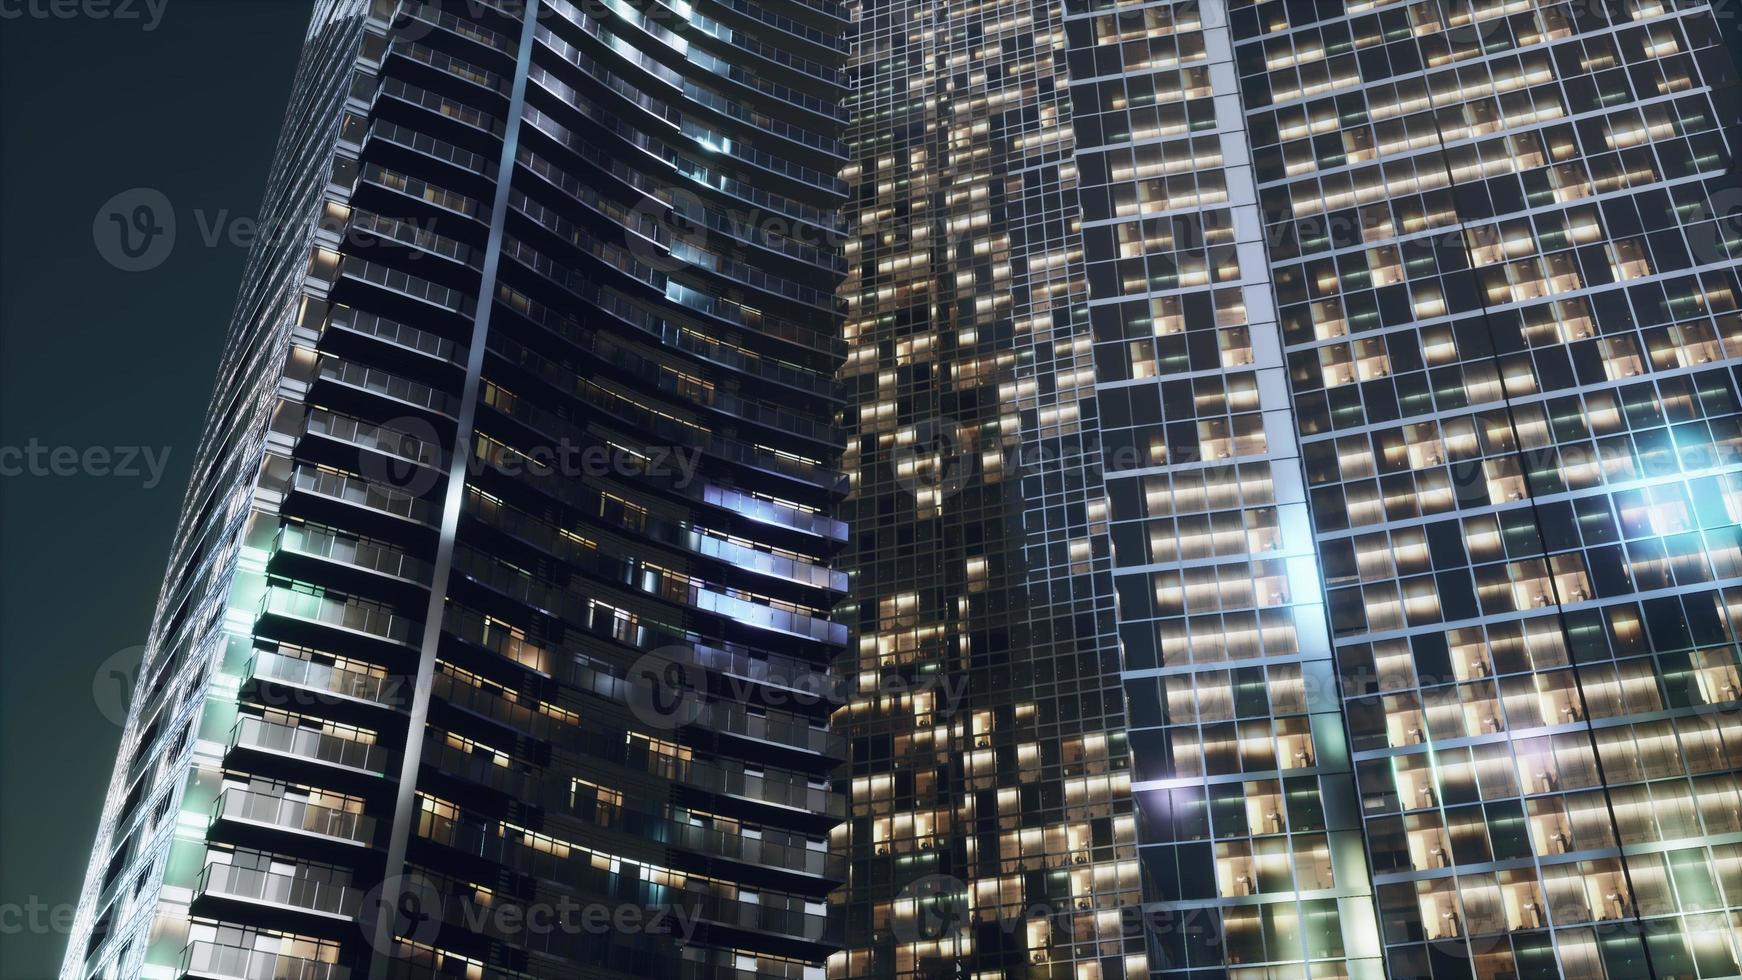 arquitetura noturna de arranha-céus com fachada de vidro foto